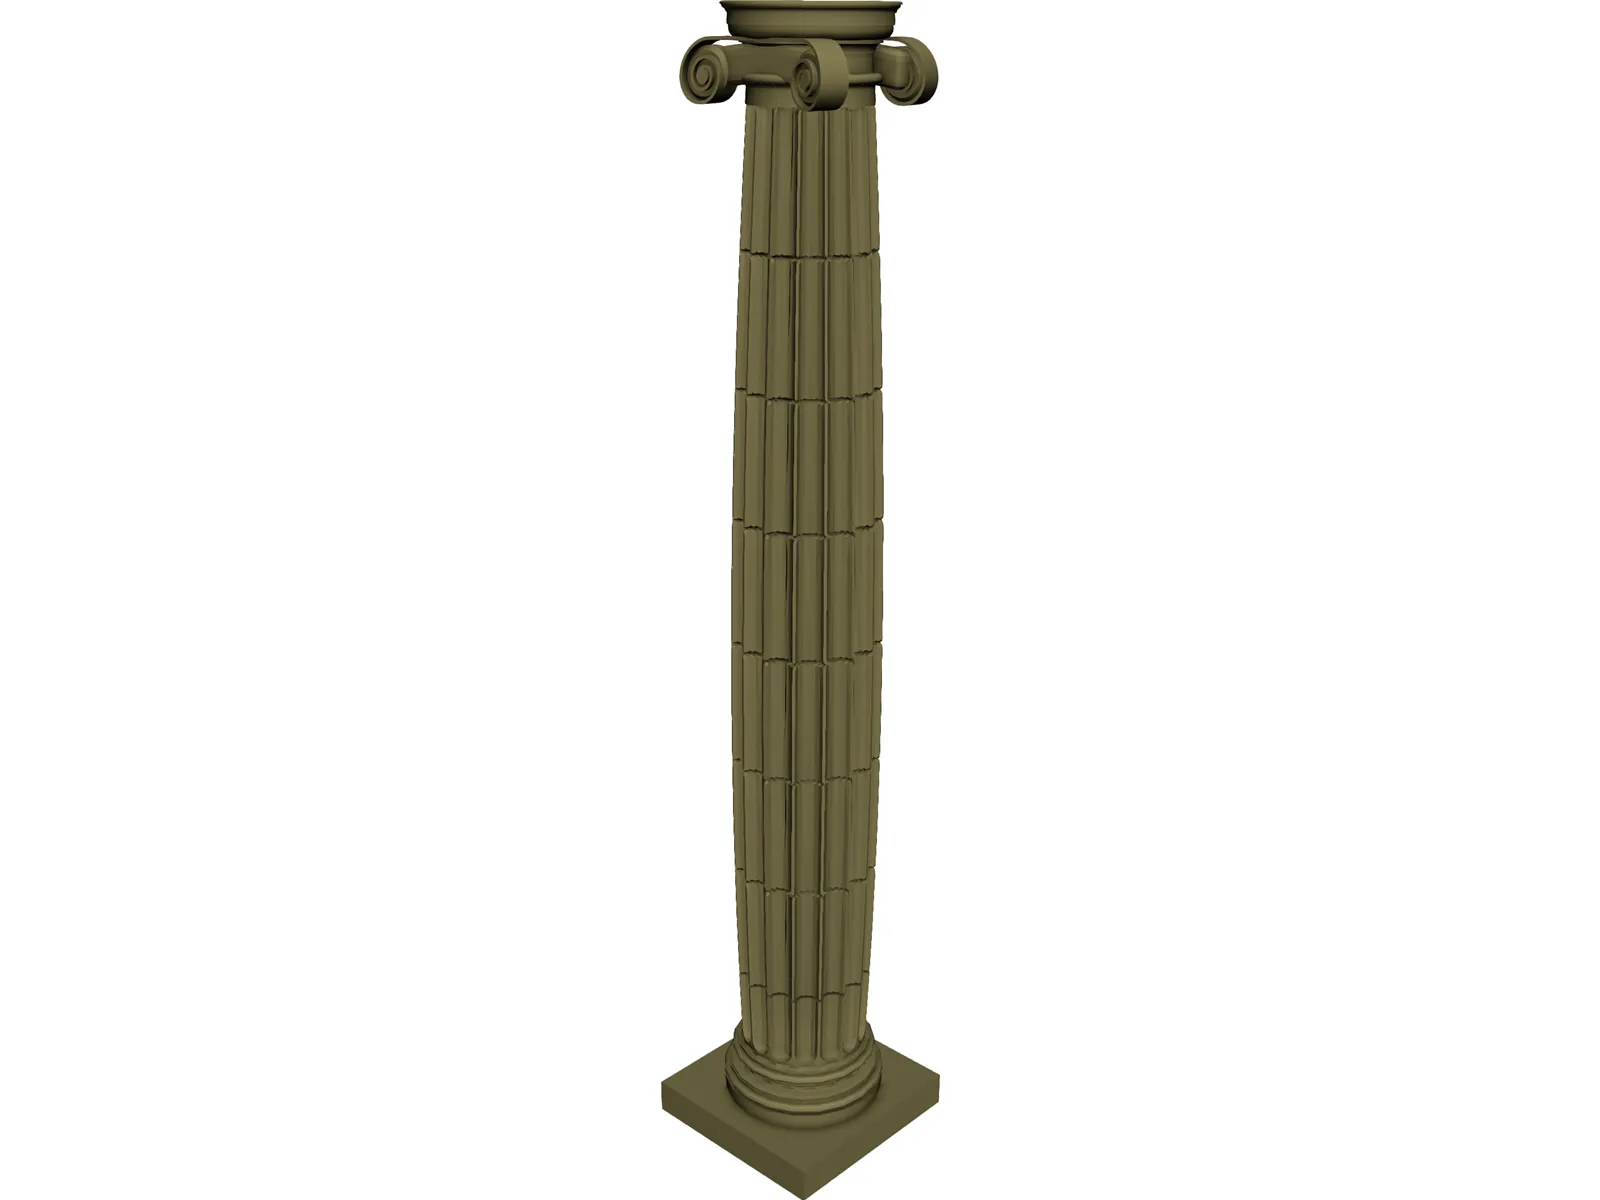 Ionic Column 3D Model